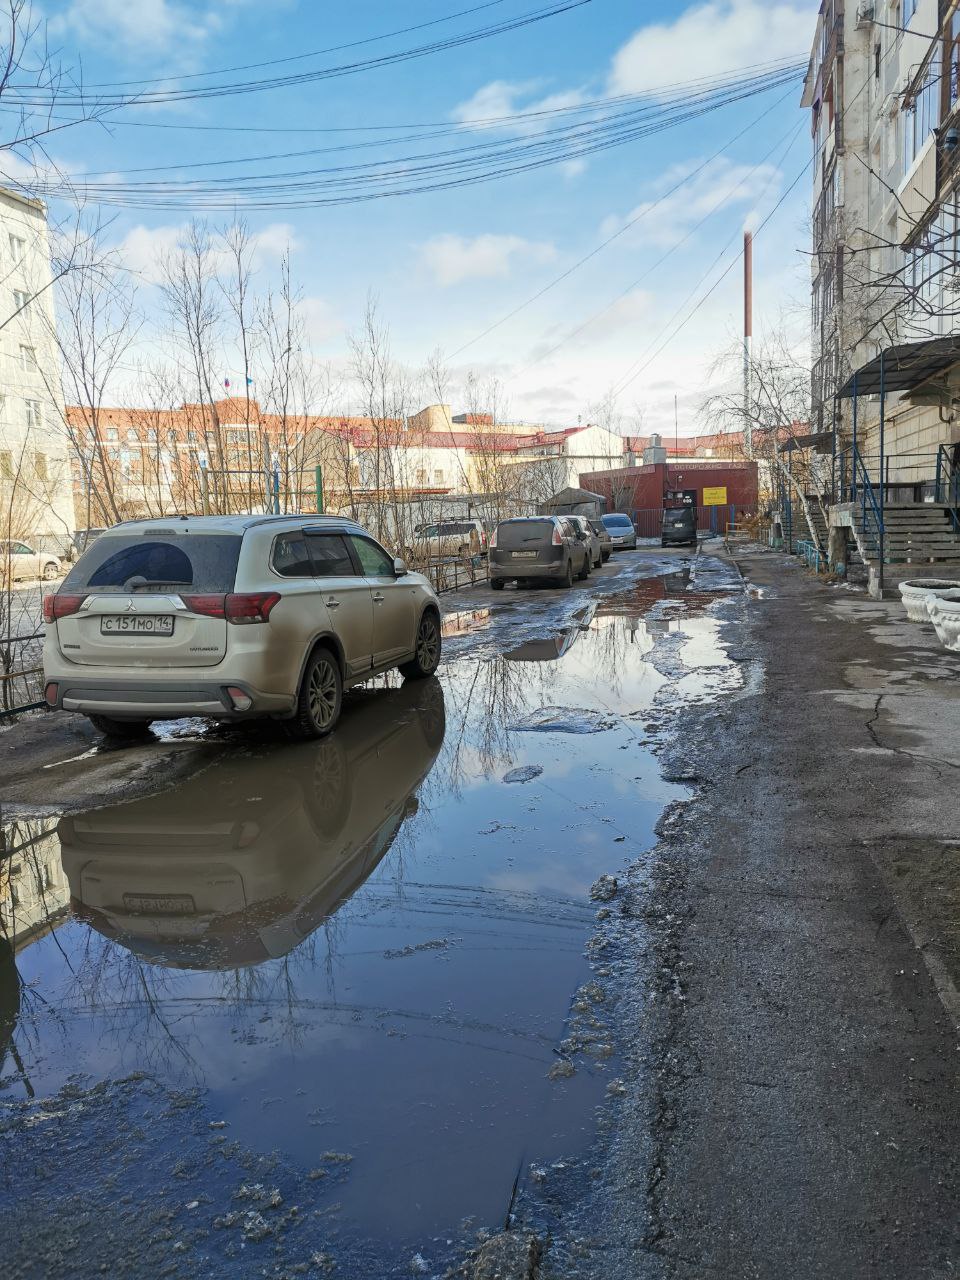 Крик души: Каждую весну начинается жуткая депрессия из-за грязи и мусора в Якутске